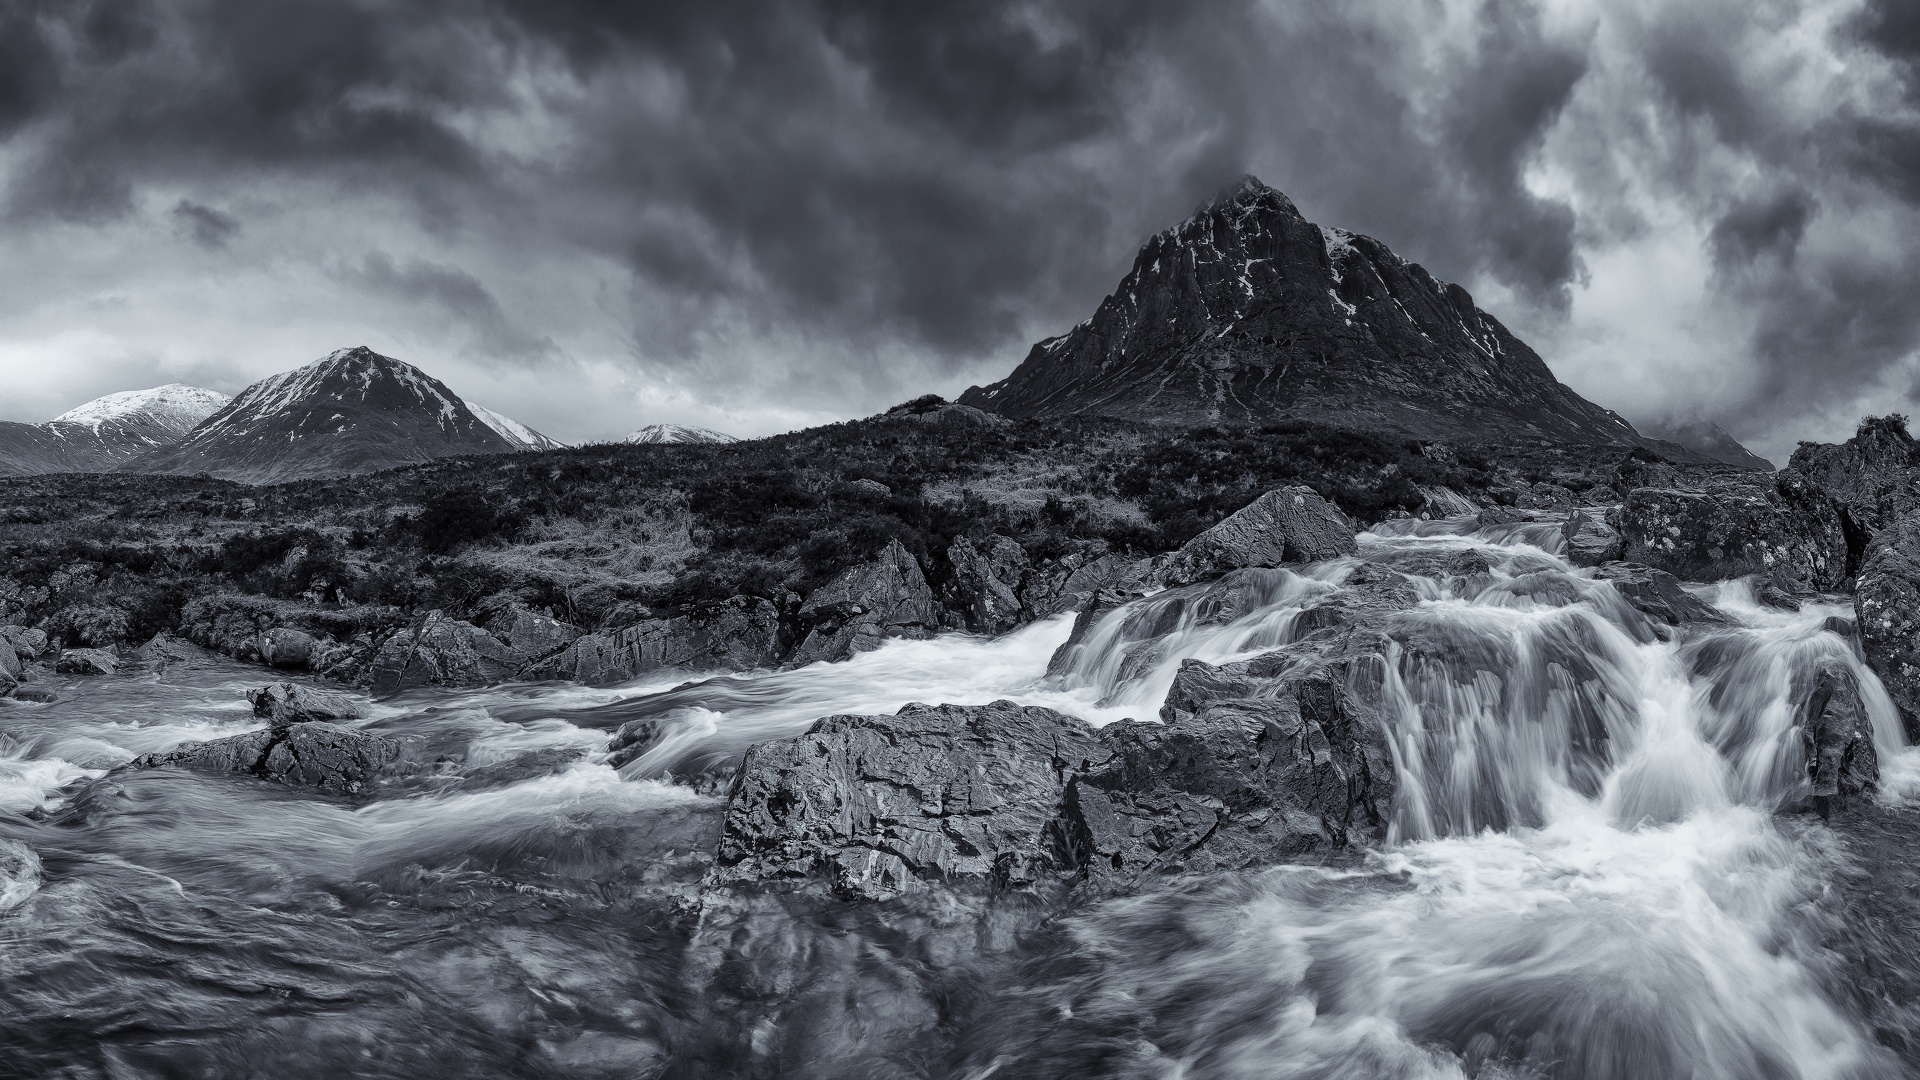 Cours d'eau dans les montagnes - noir et blanc.jpg